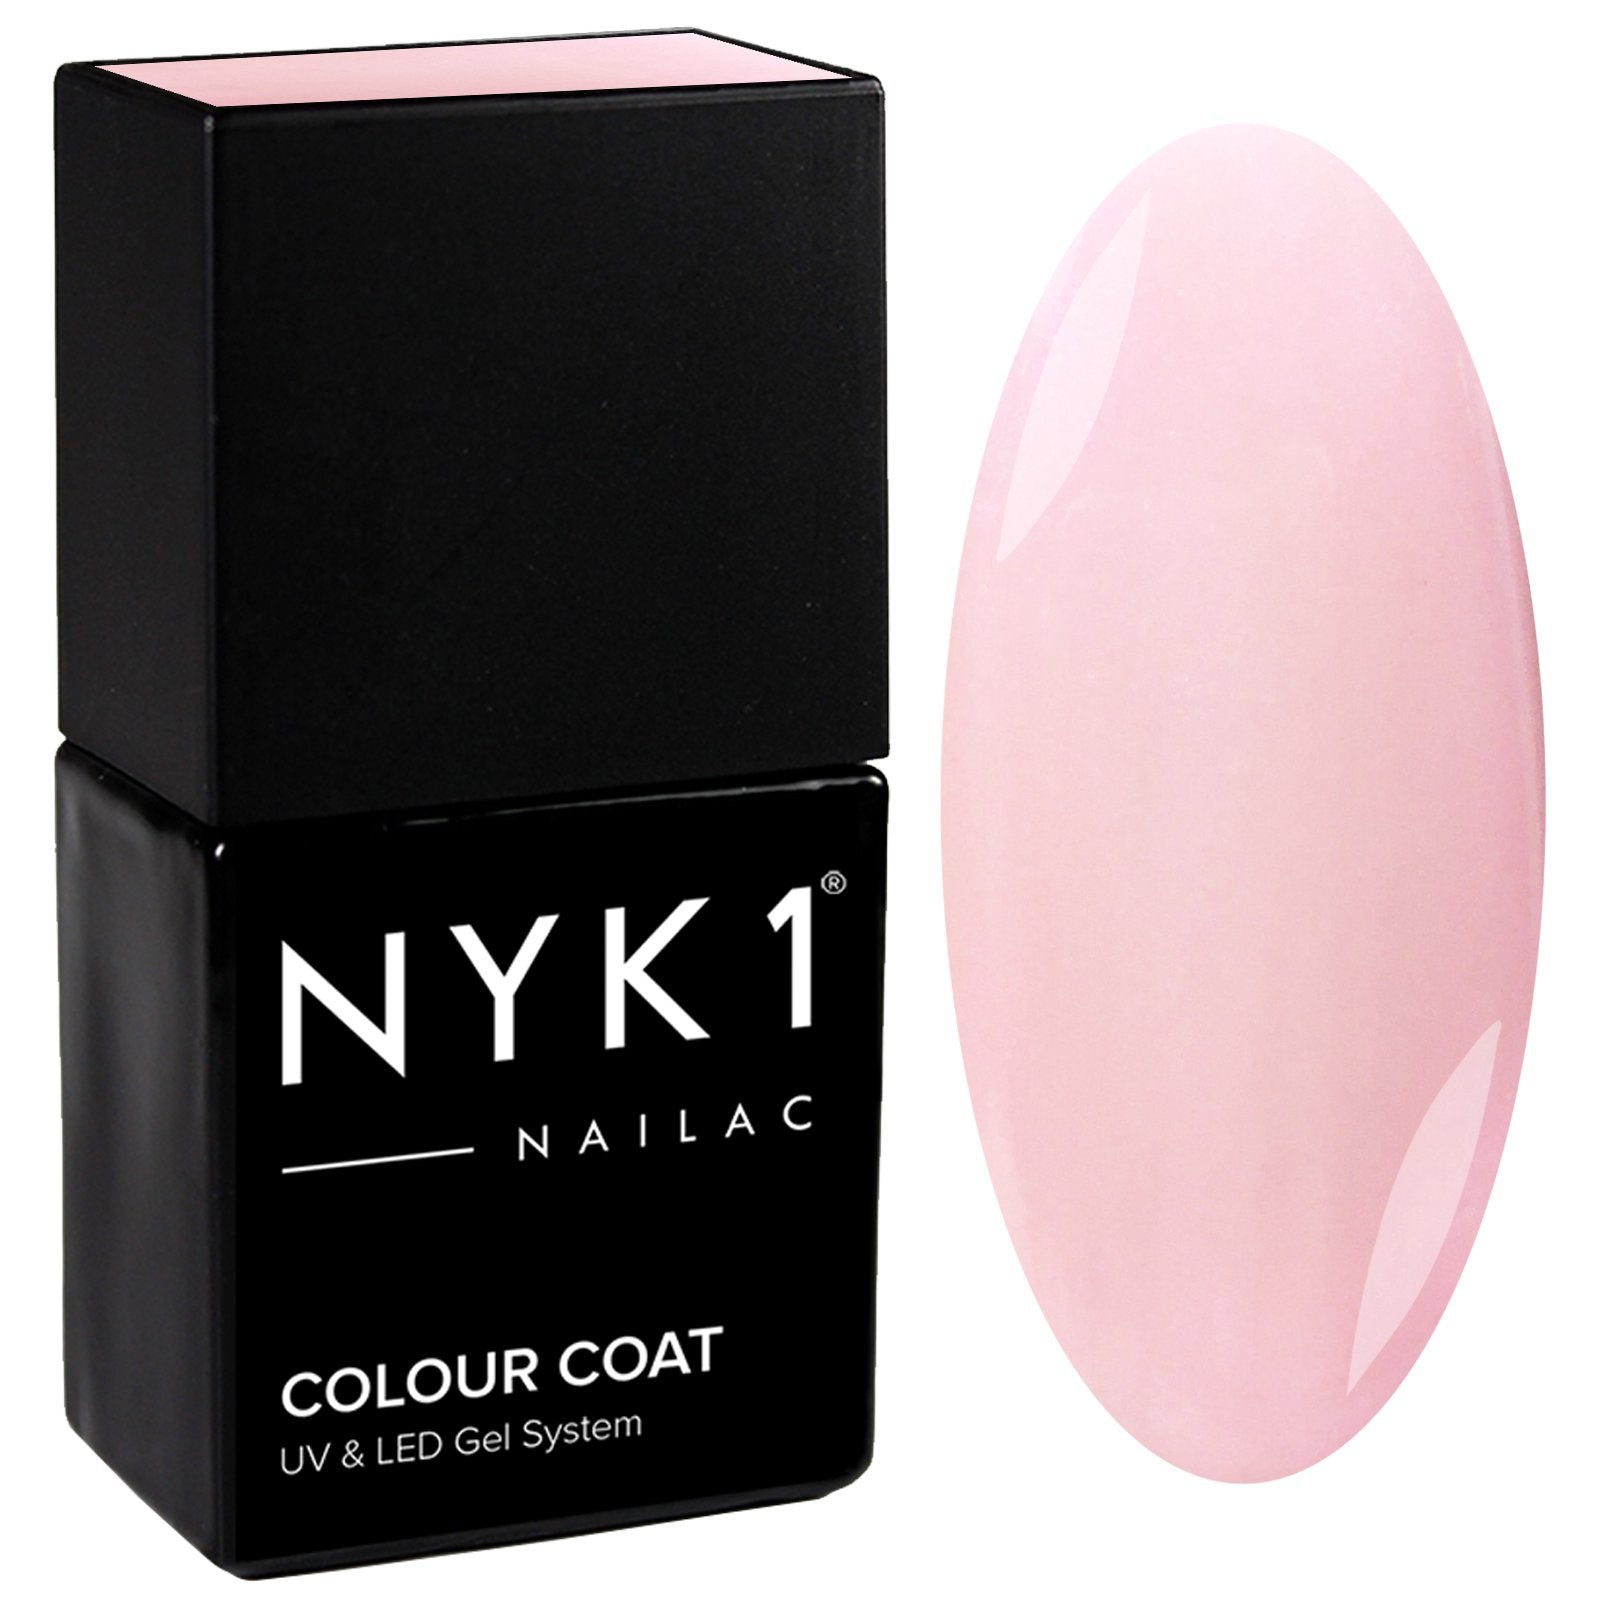 NYK1 Nailac French Pink Soft Colour Gel Nail Polish